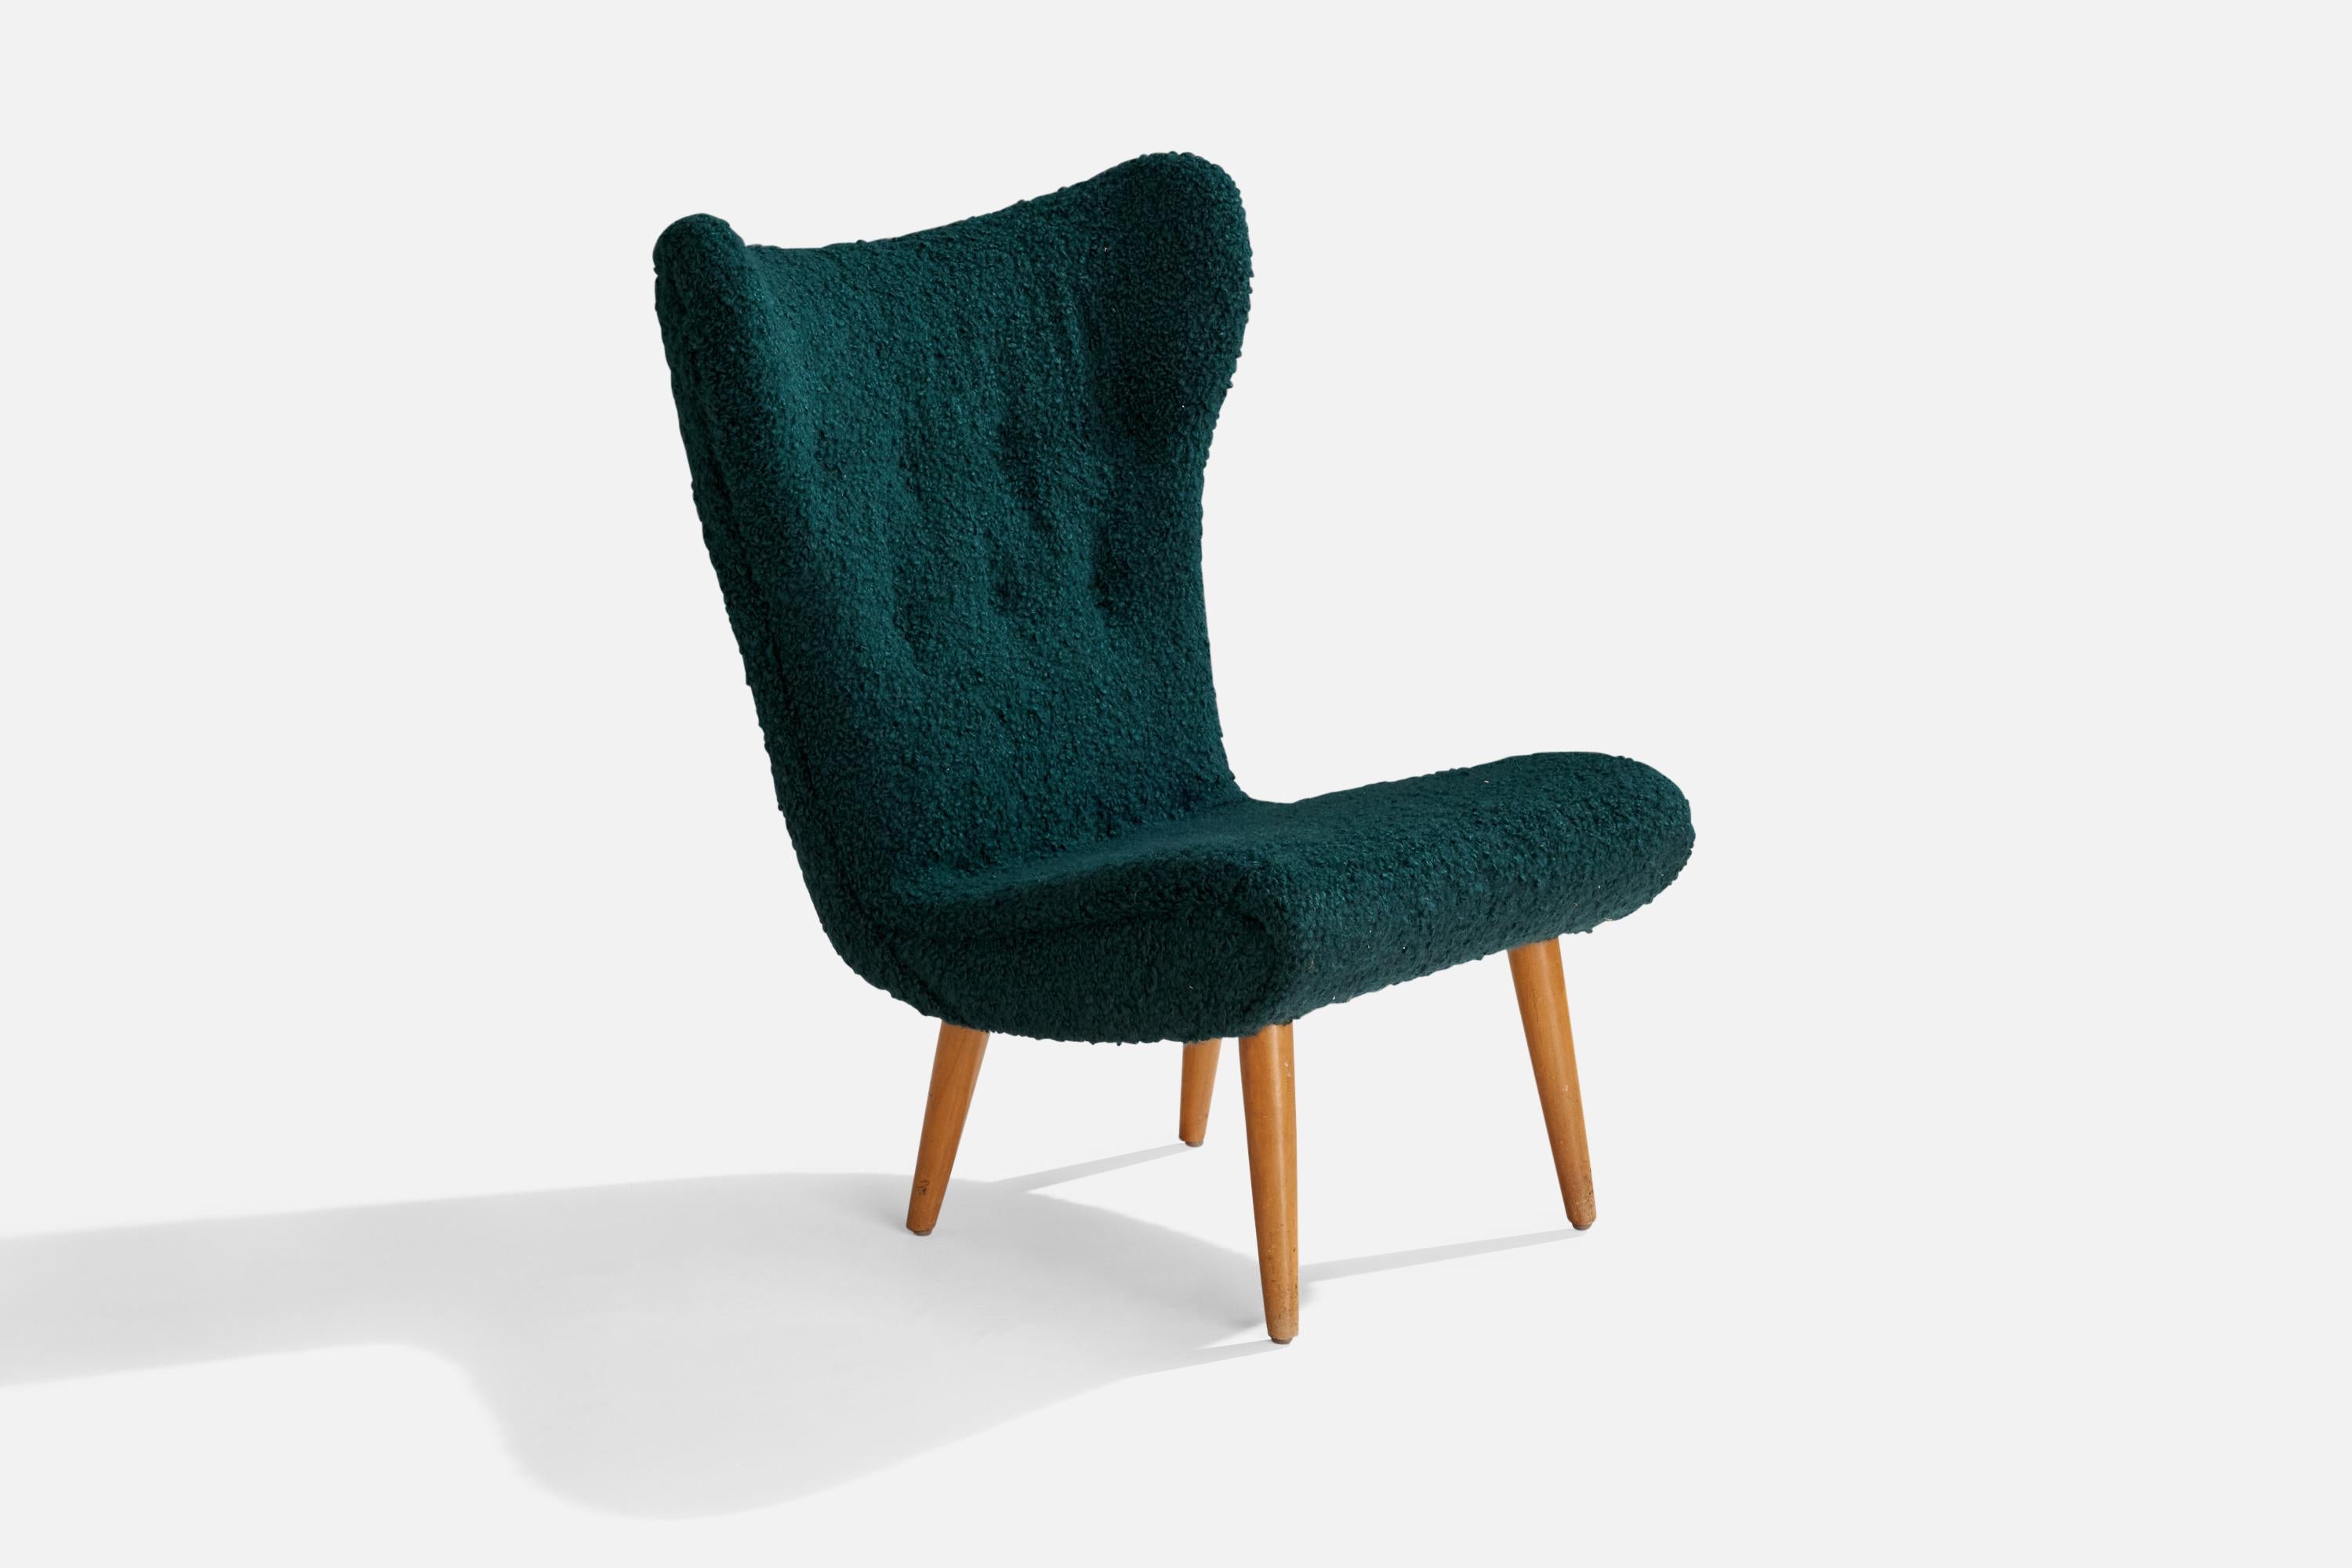 Sessel aus Holz und blauem Bouclé-Stoff, entworfen und hergestellt in Schweden, um 1950.

Neu gepolstert mit brandneuem Stoff.
Sitzhöhe: 16